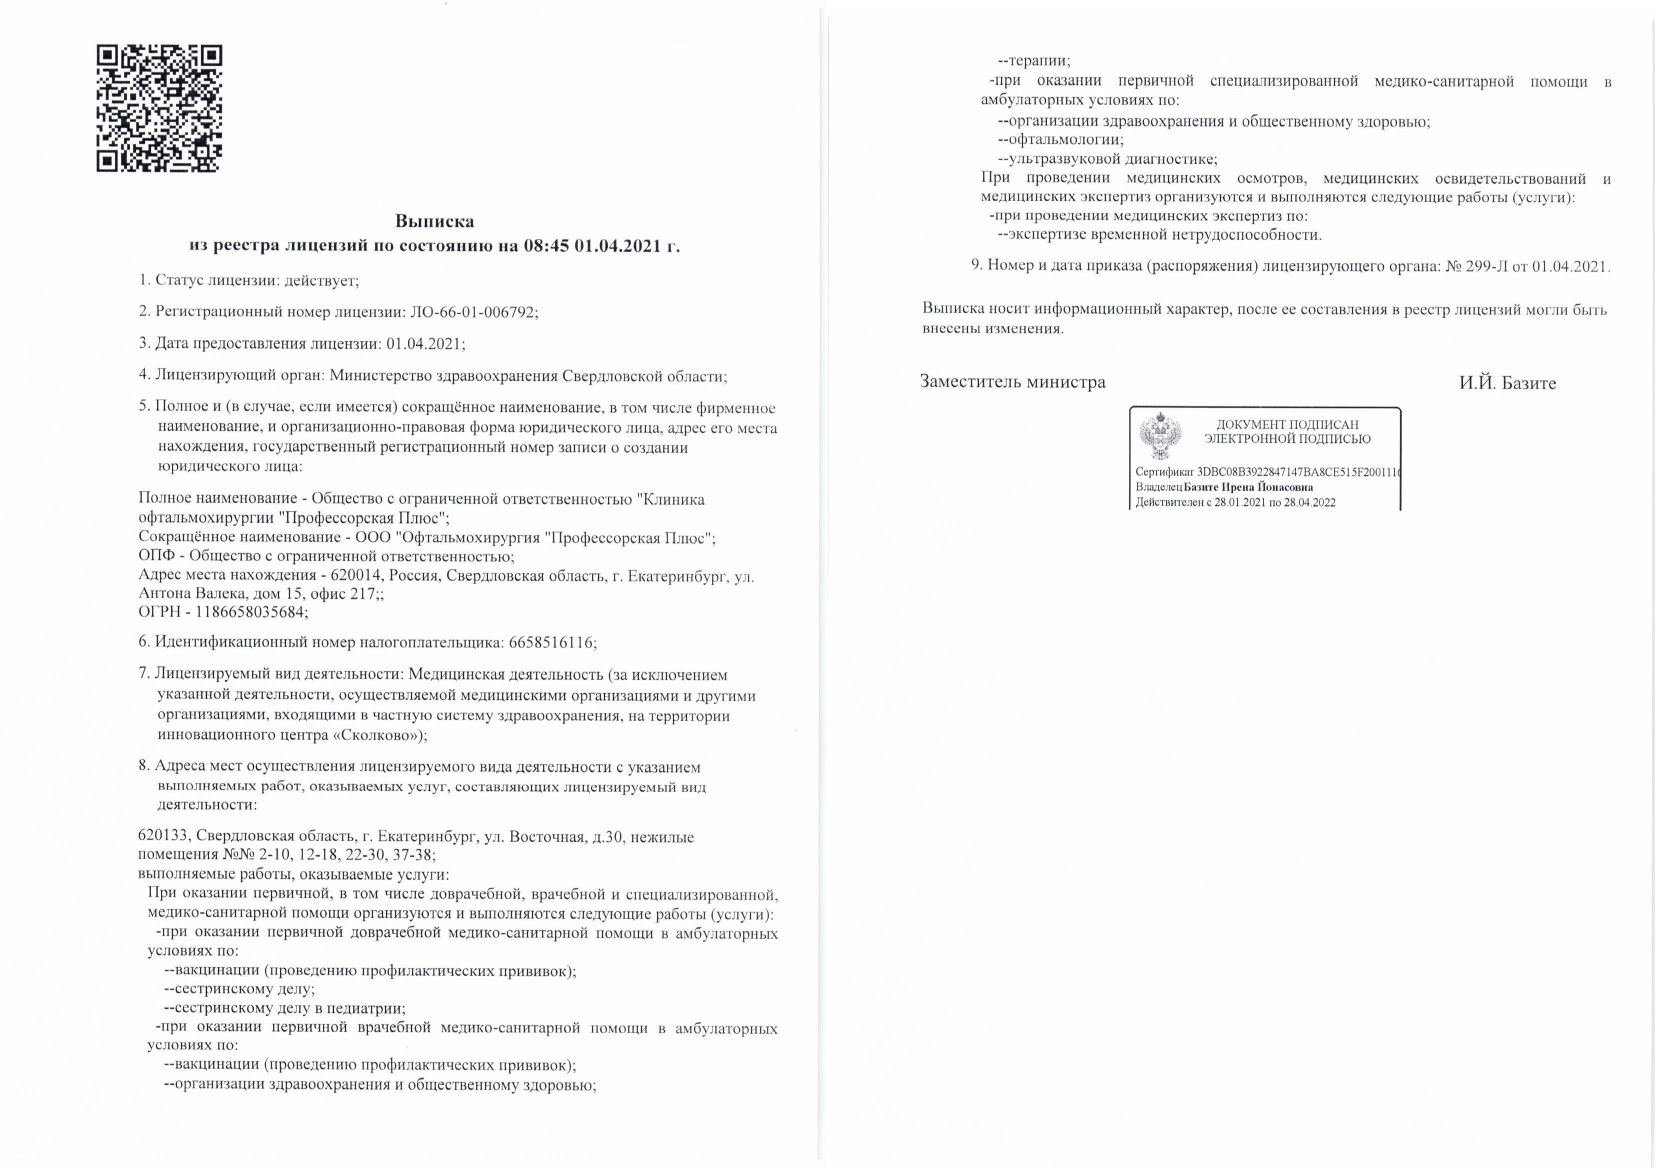 Лицензии офтальмологической клиники Профессорская Плюс в Екатеринбурге